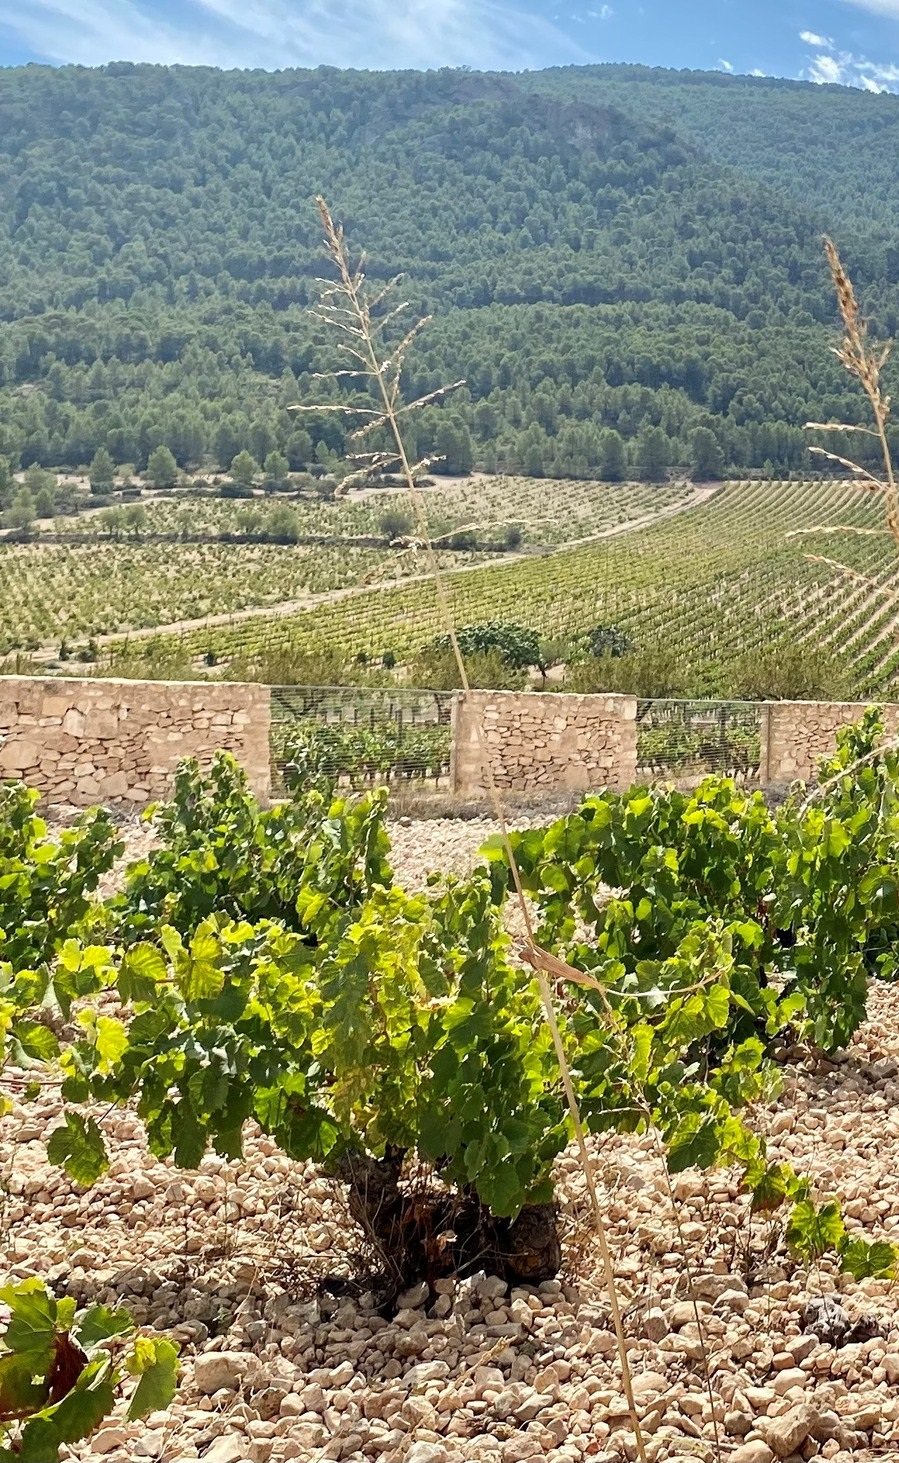 Spain_Alicante_Bodegas Sierra Salinas_vineyards.jpg